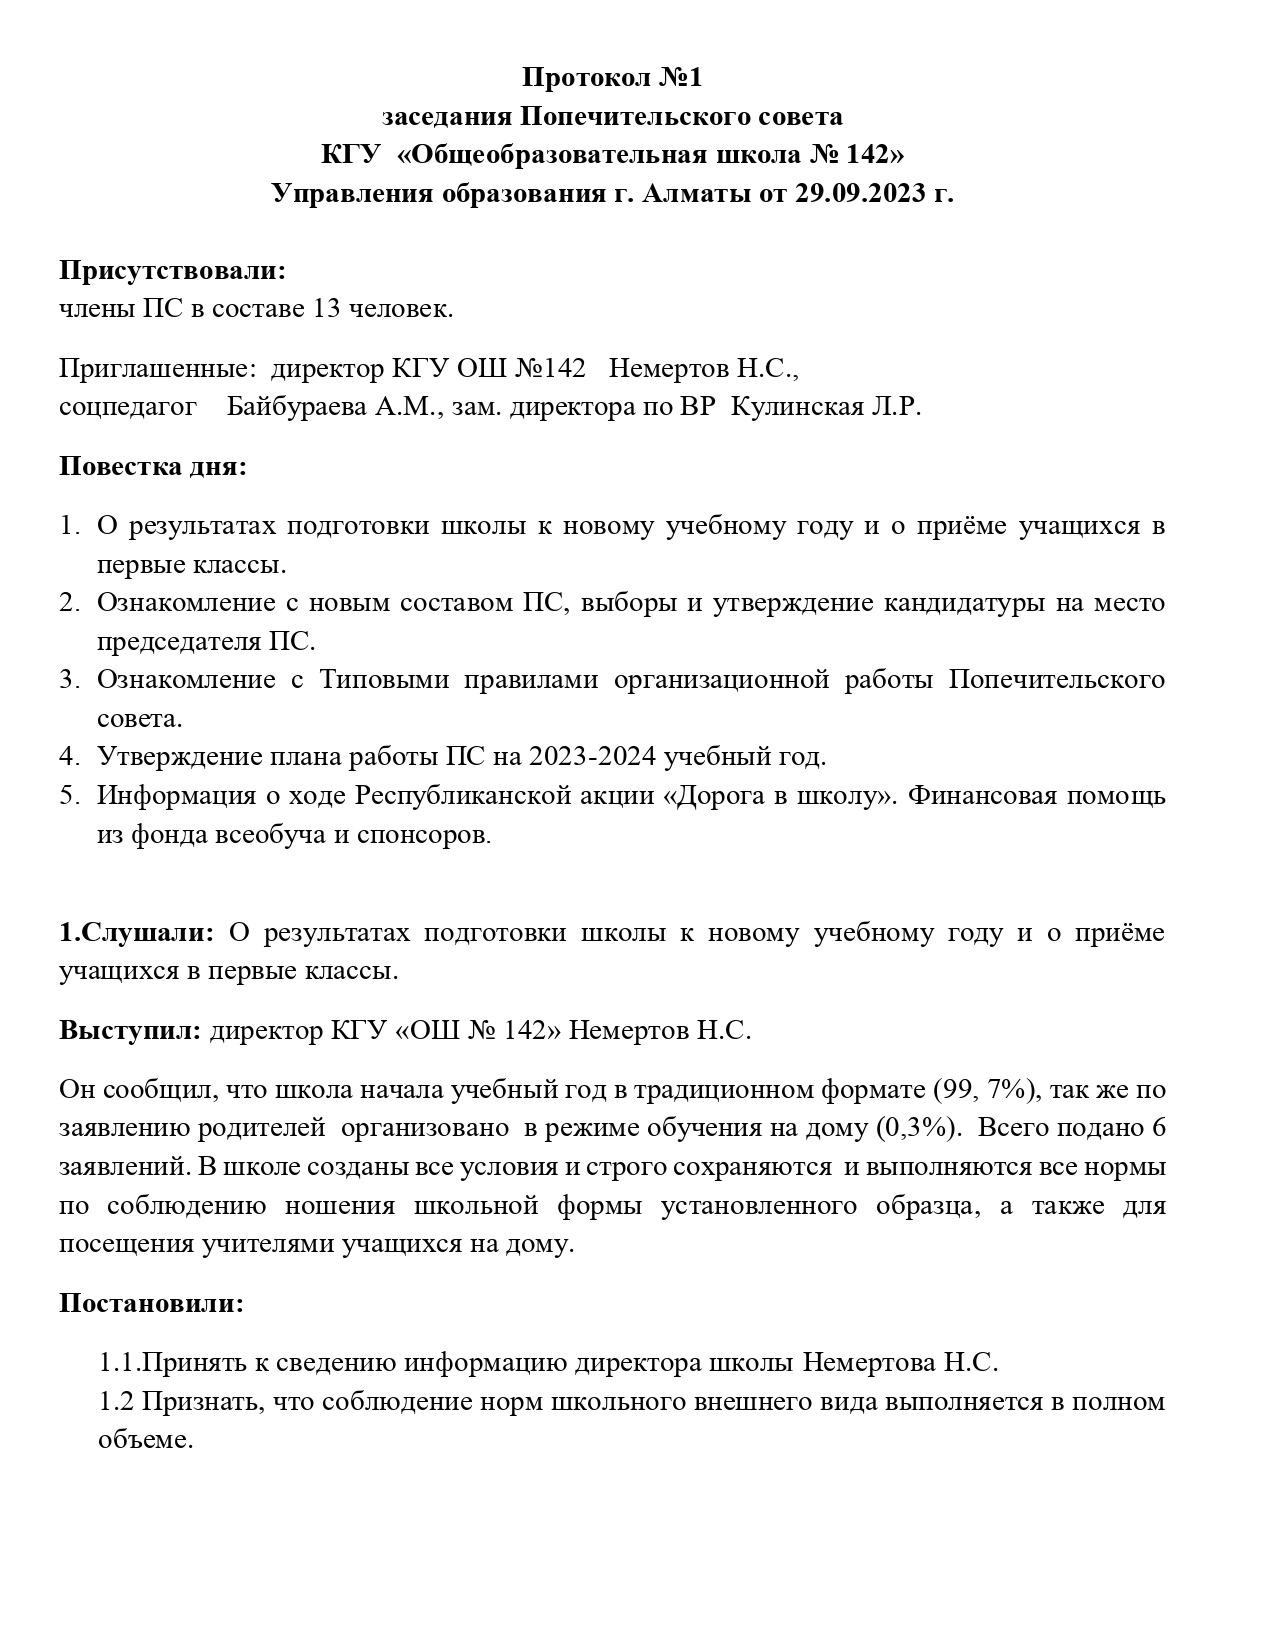 Протокол заседания попечительского совета № 1 от 29.09.2023 года